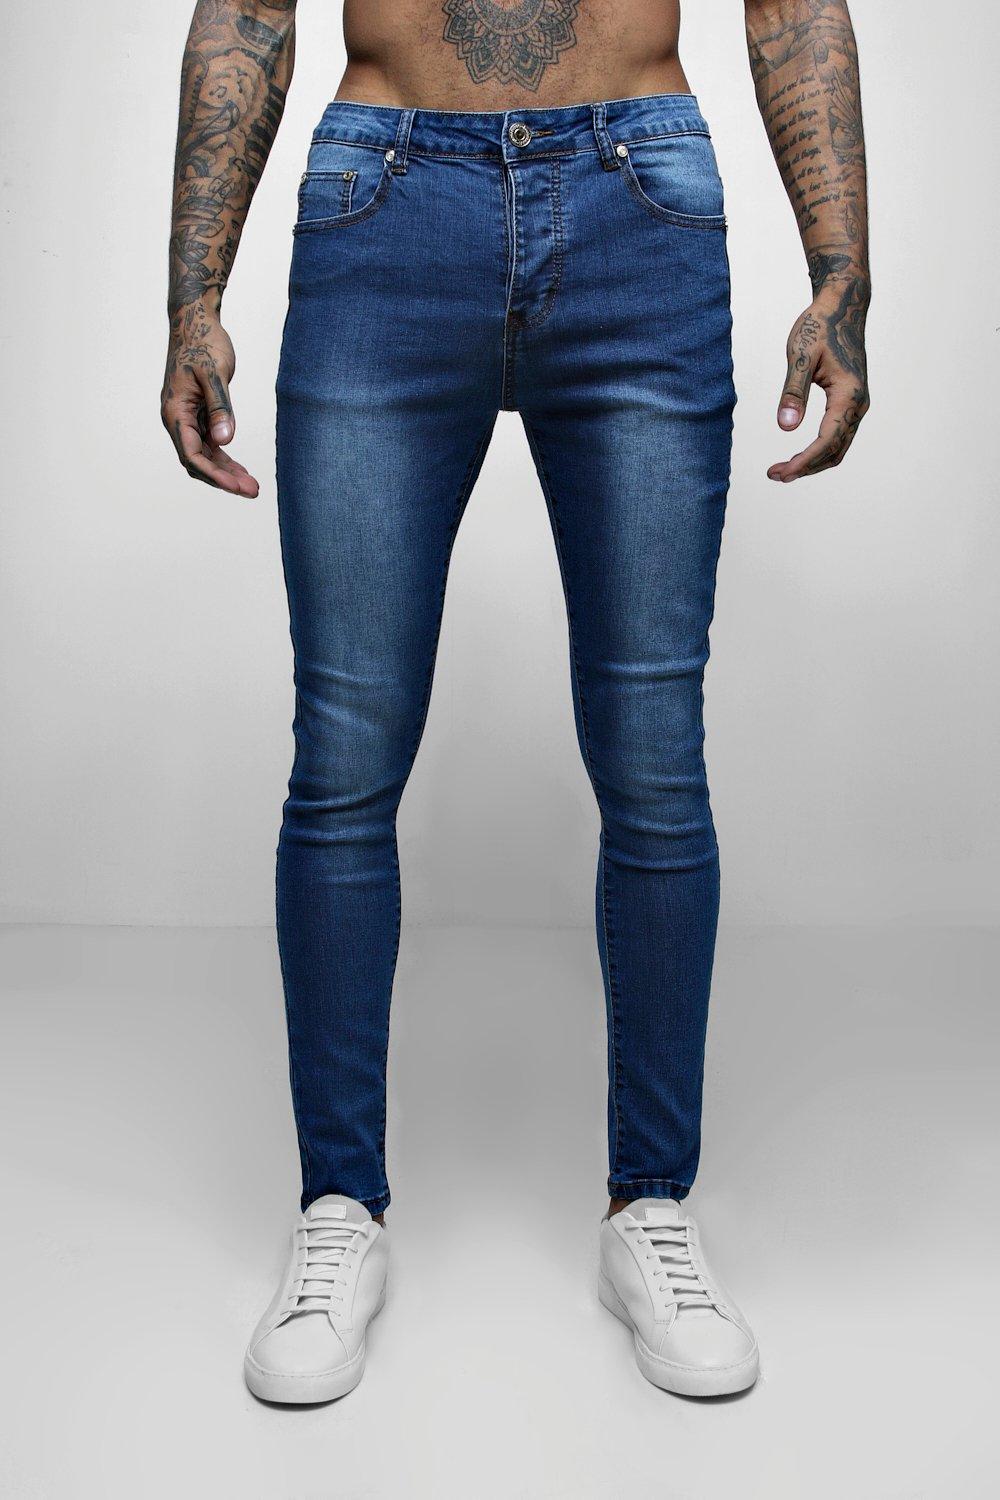 jeans for short legs men's